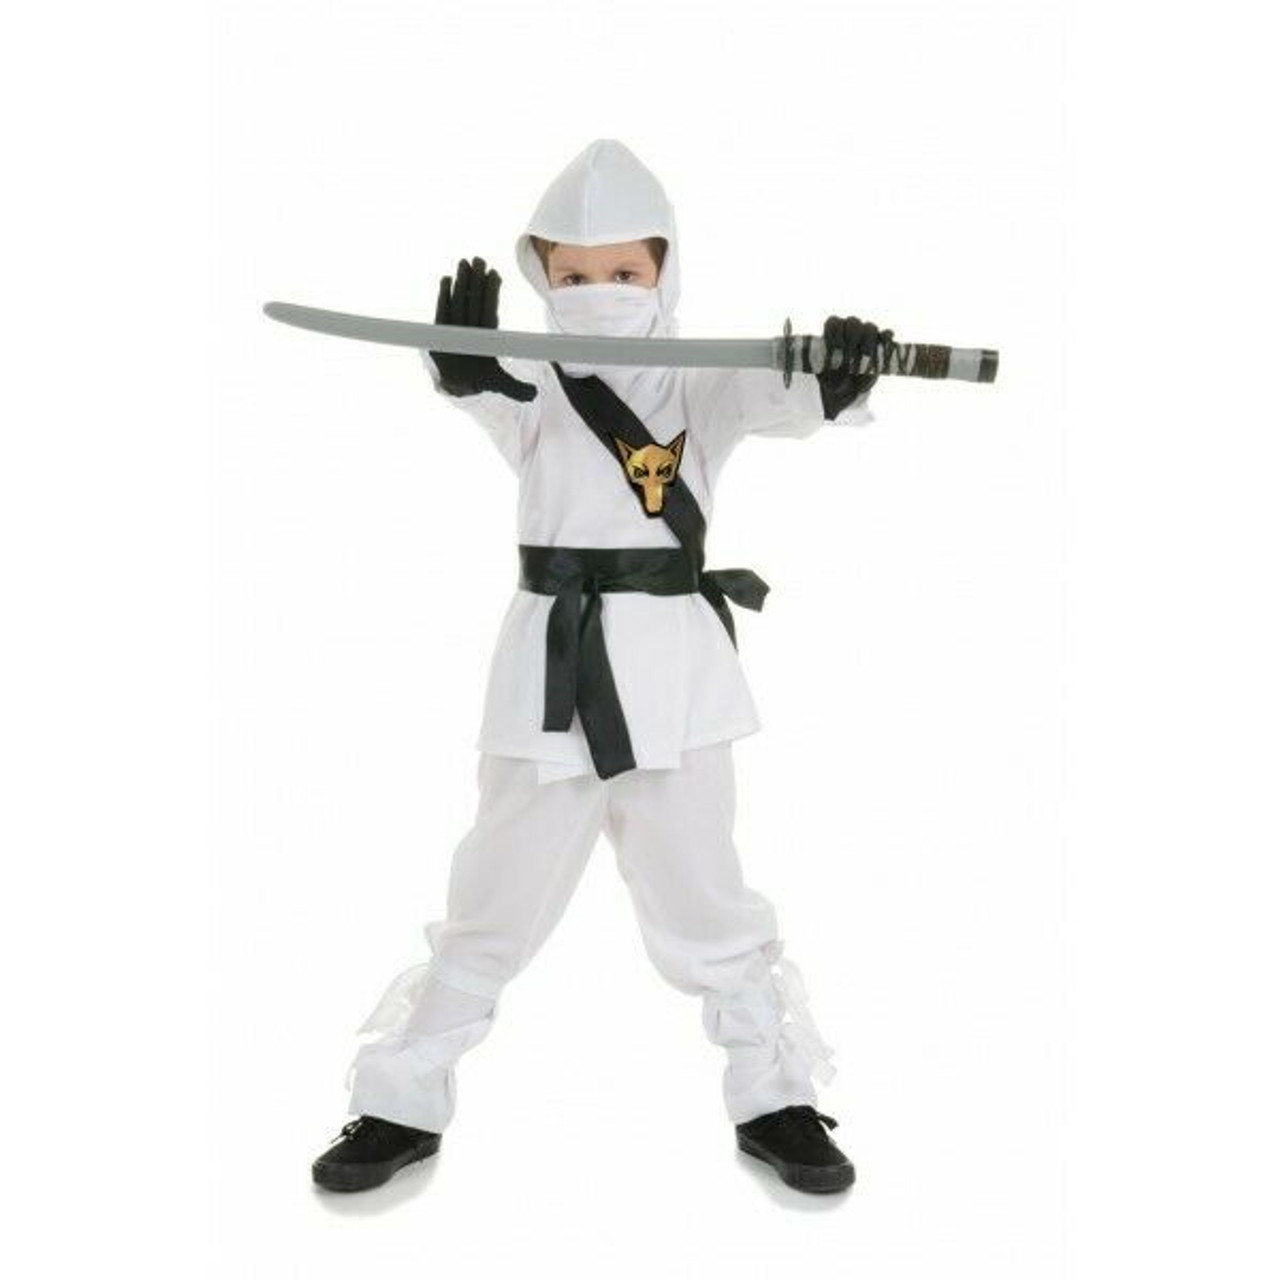 Underwraps Warrior Champion Fox Fighter Childrens Costume 25844 - Fearless Apparel